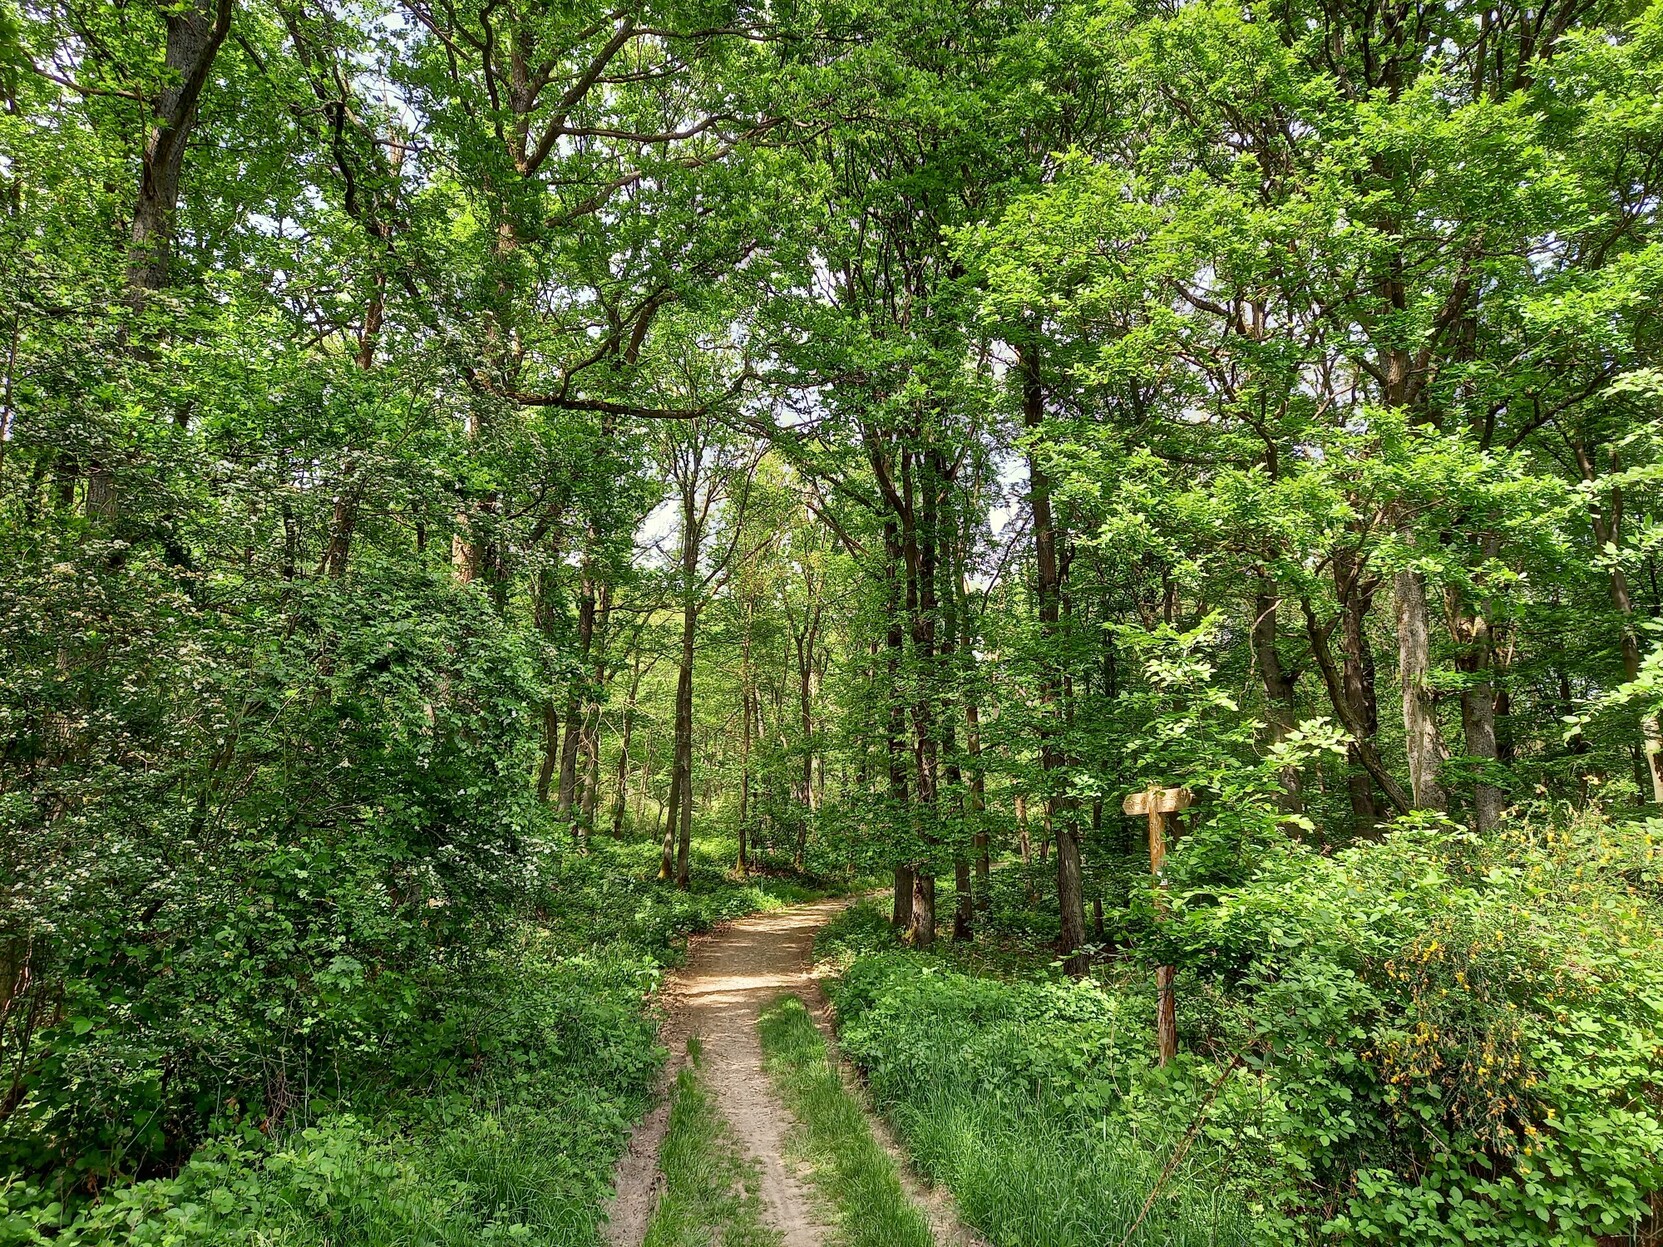 Hellgrüner Frühsommerwald, in der Mitte ein Wanderweg, rechts und links noch recht junge Bäume, Mischwald